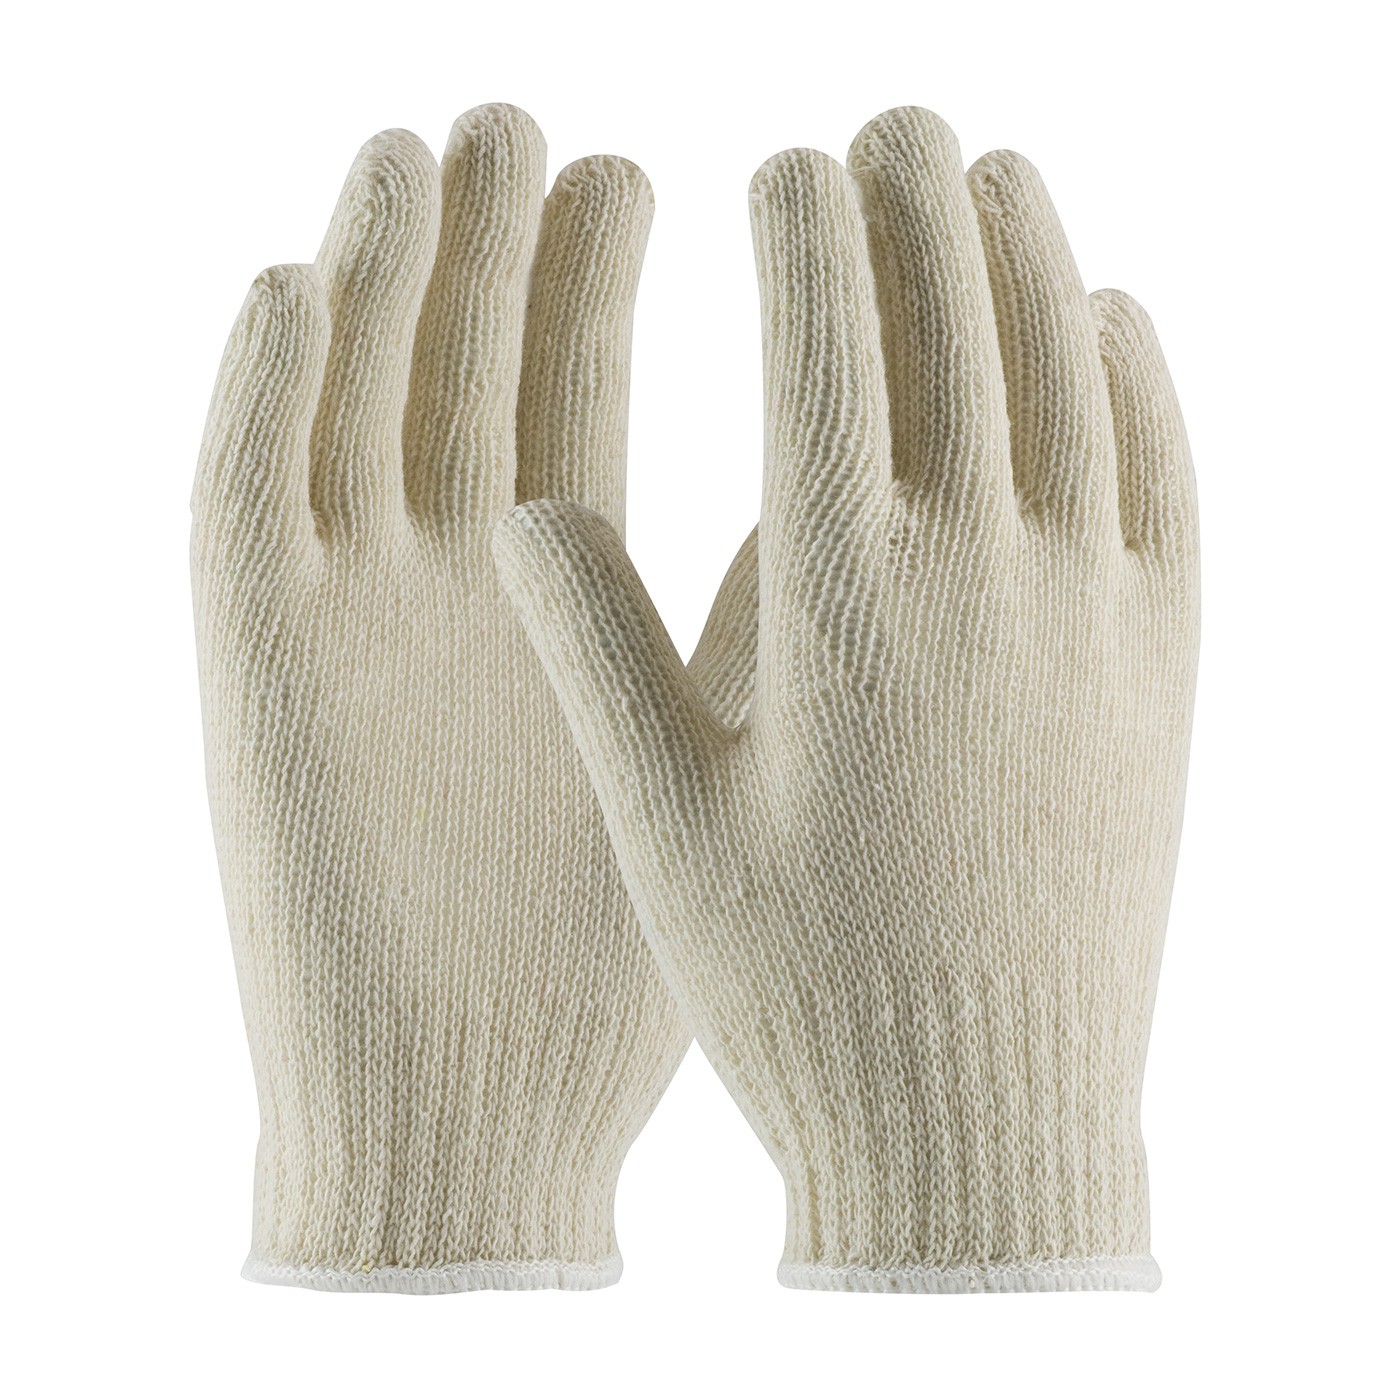 PIP® Standard Weight Seamless Knit 100% Cotton Glove - 7 Gauge  (#708SC)